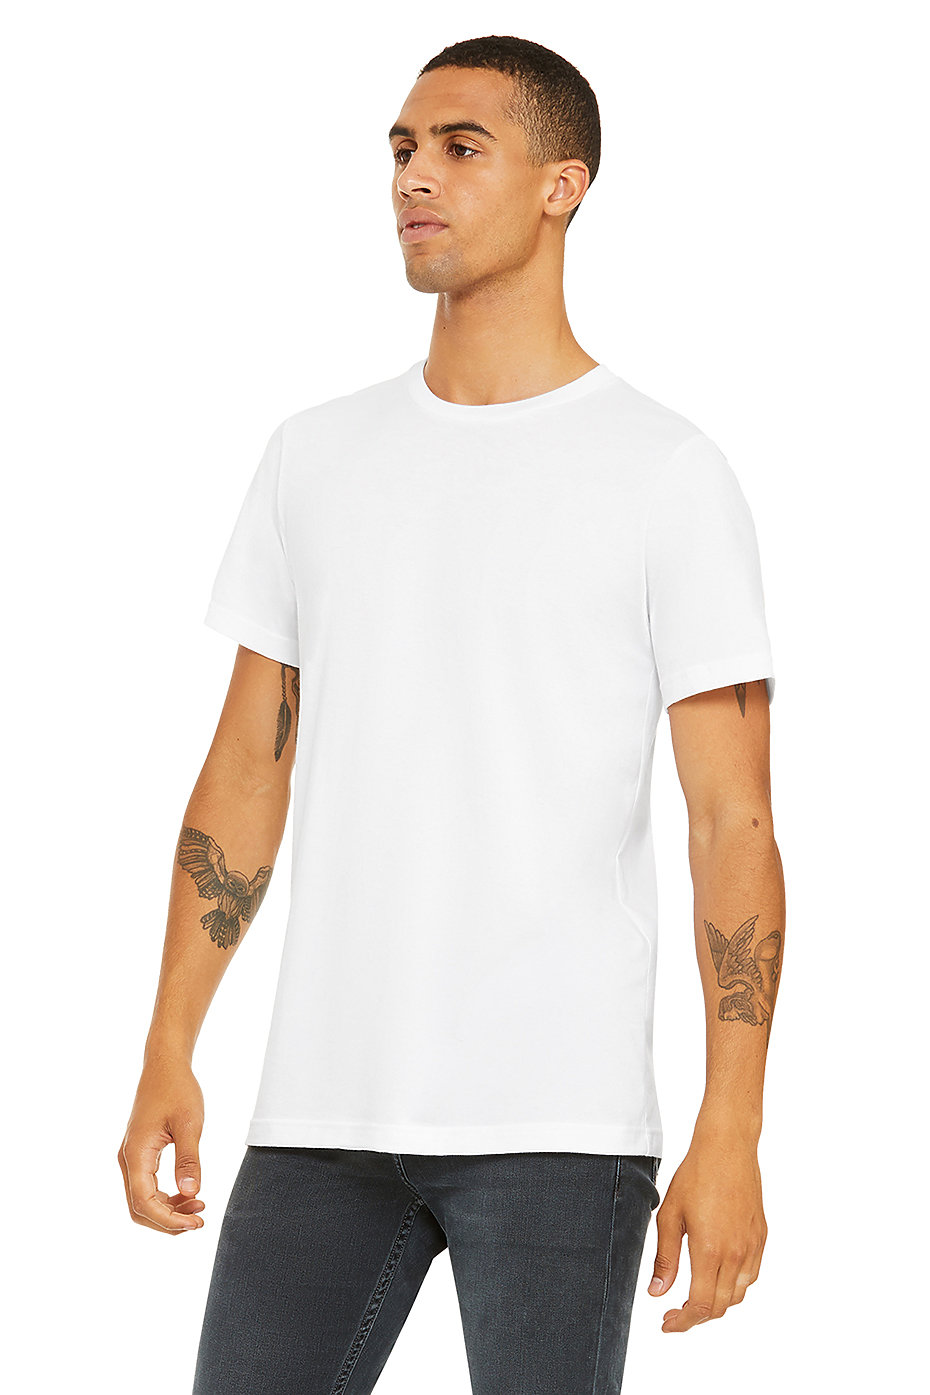 cotton jersey t shirt wholesale